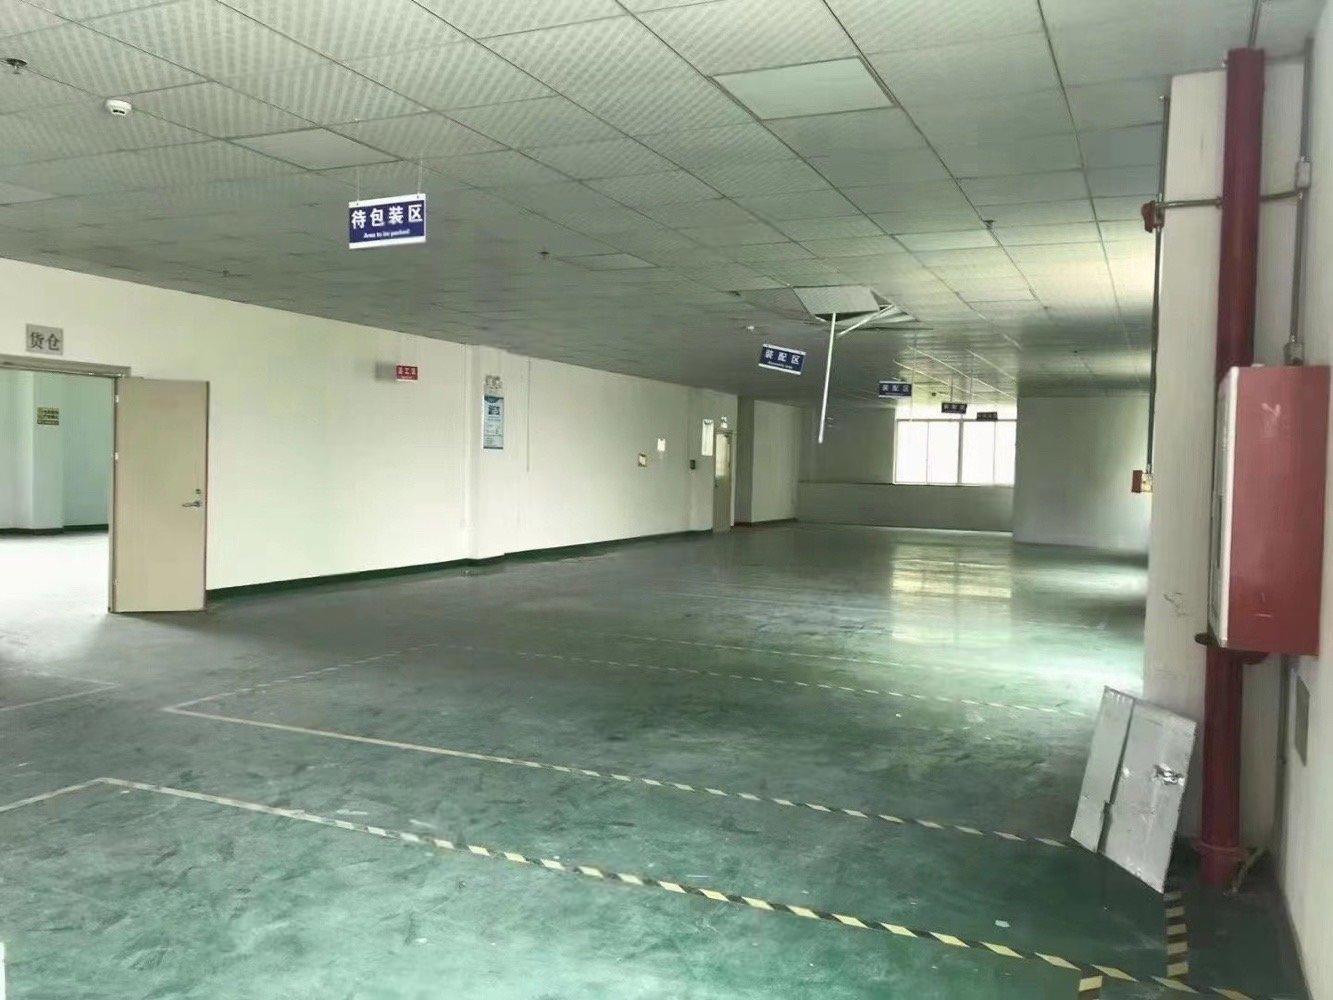 40元起一楼300平空地大福永地铁口厂房出租仓库出租分租机场